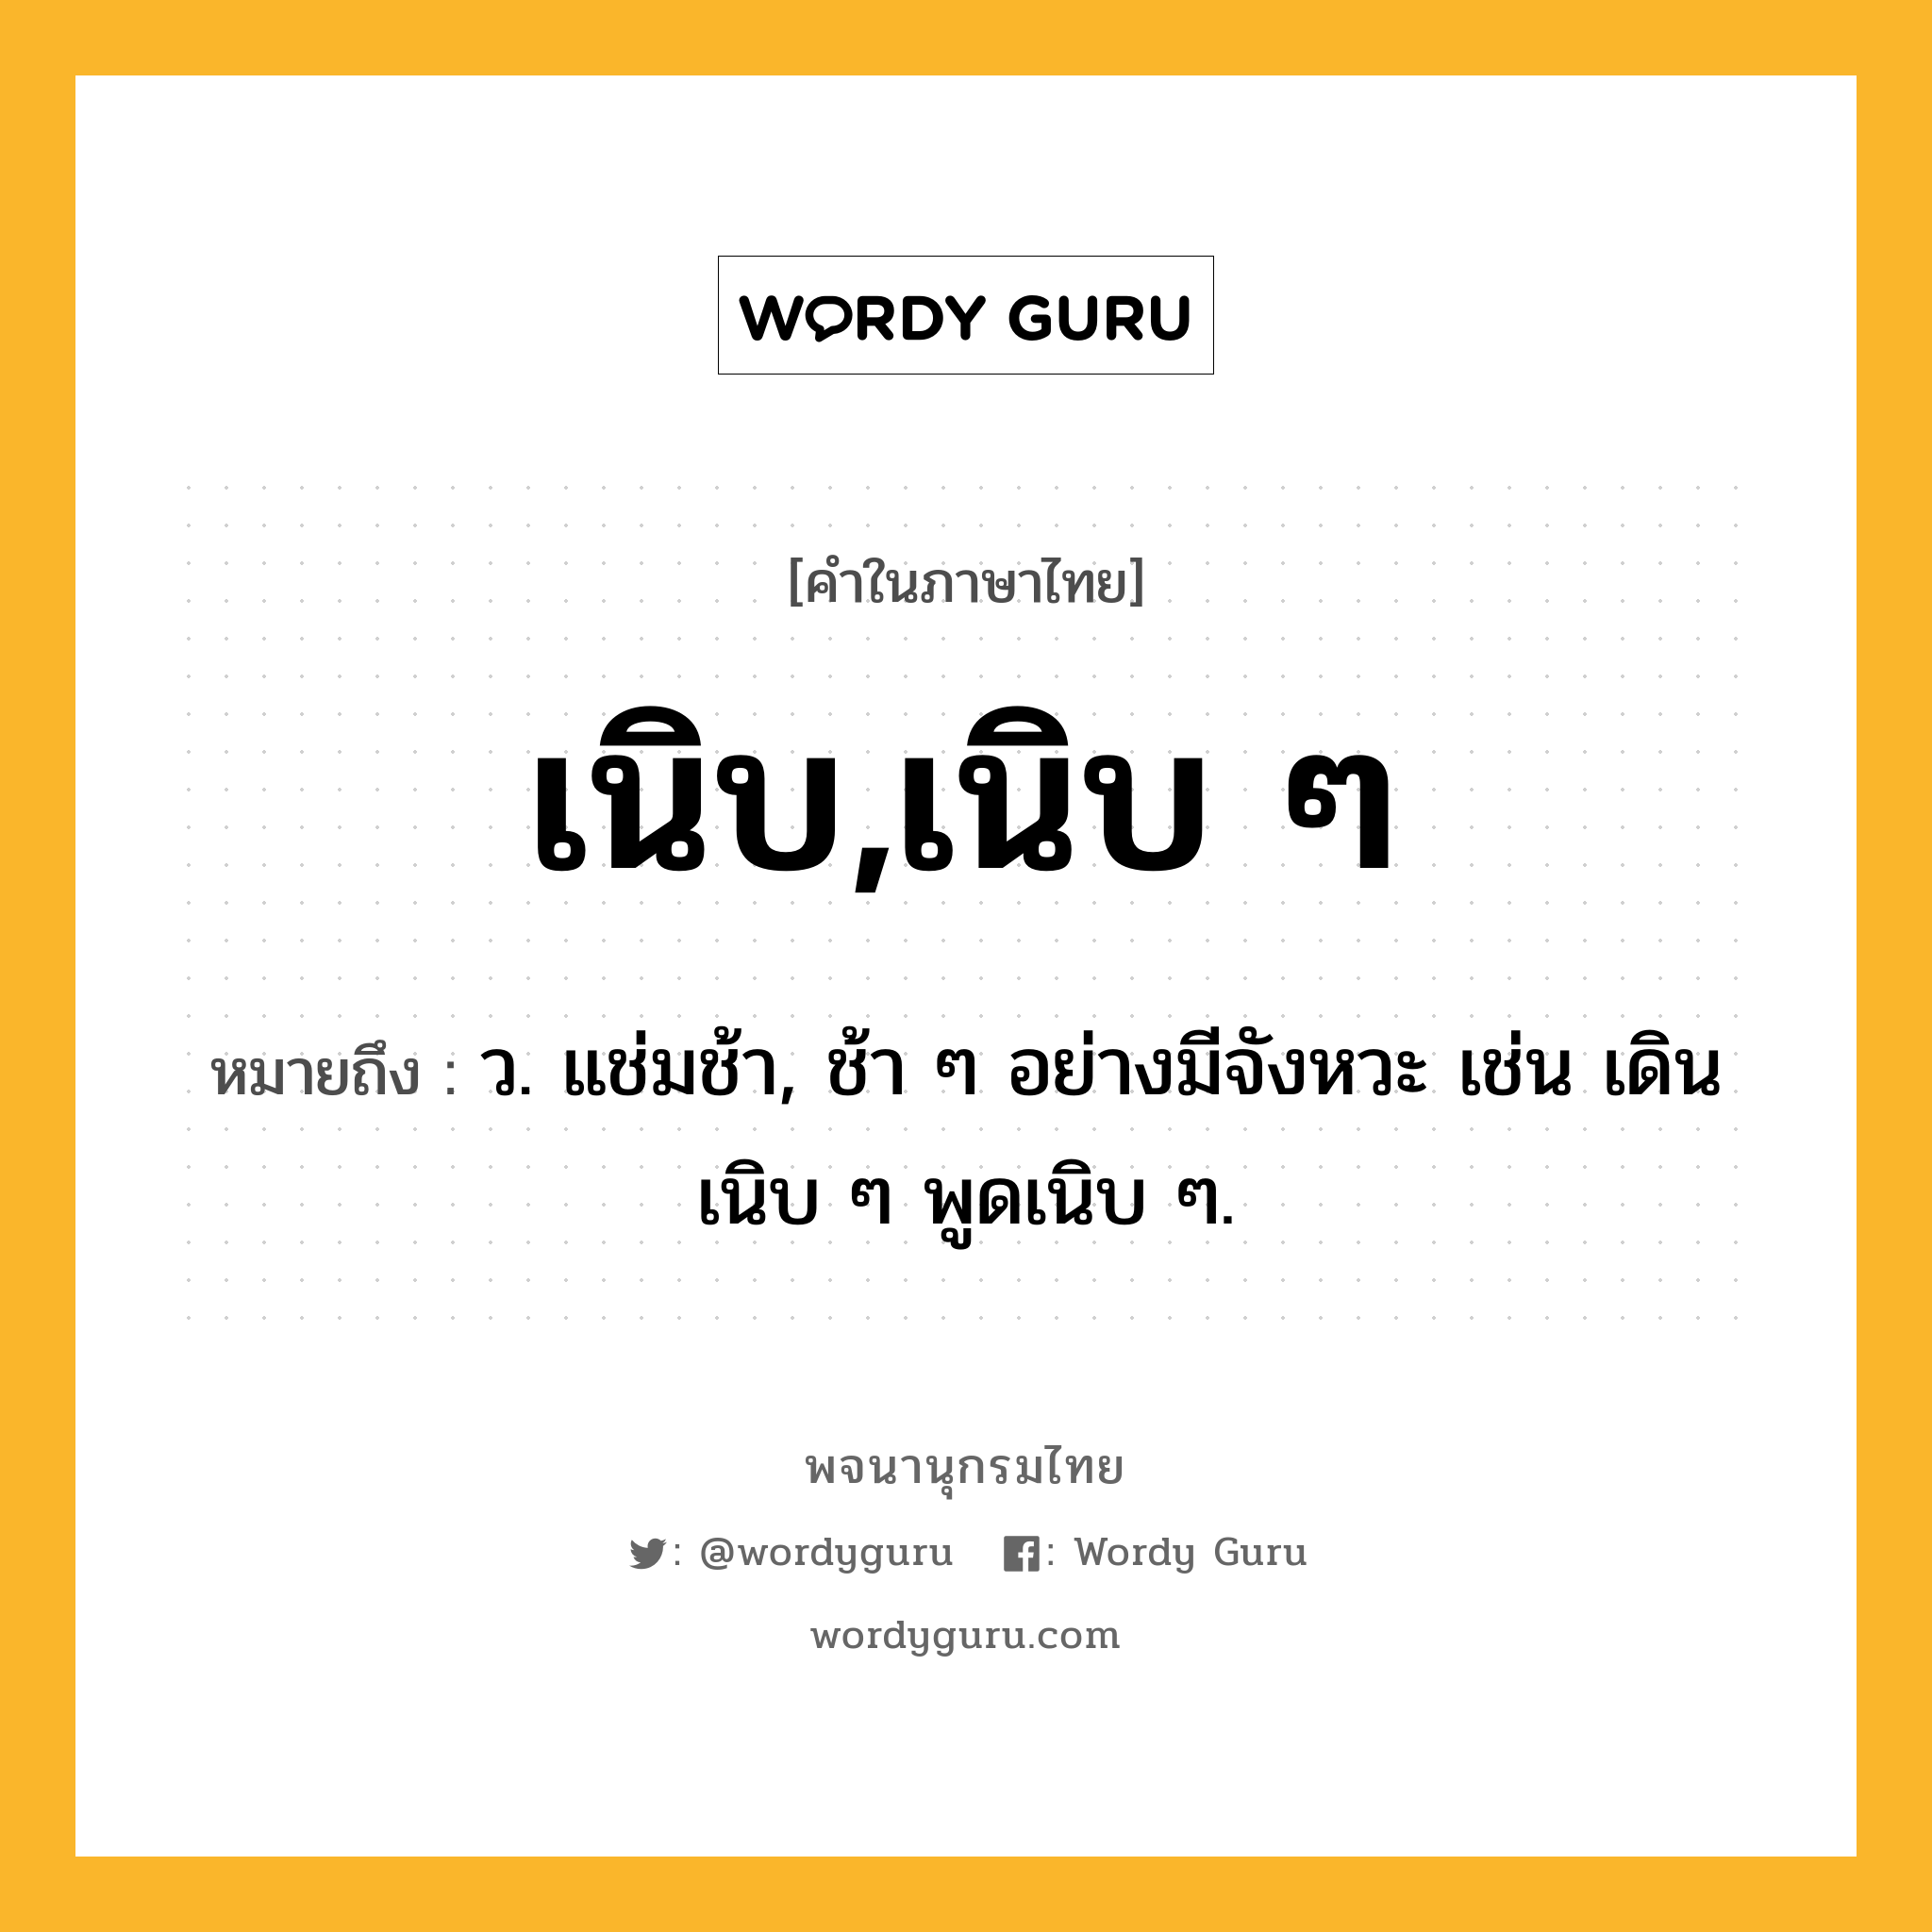 เนิบ,เนิบ ๆ หมายถึงอะไร?, คำในภาษาไทย เนิบ,เนิบ ๆ หมายถึง ว. แช่มช้า, ช้า ๆ อย่างมีจังหวะ เช่น เดินเนิบ ๆ พูดเนิบ ๆ.